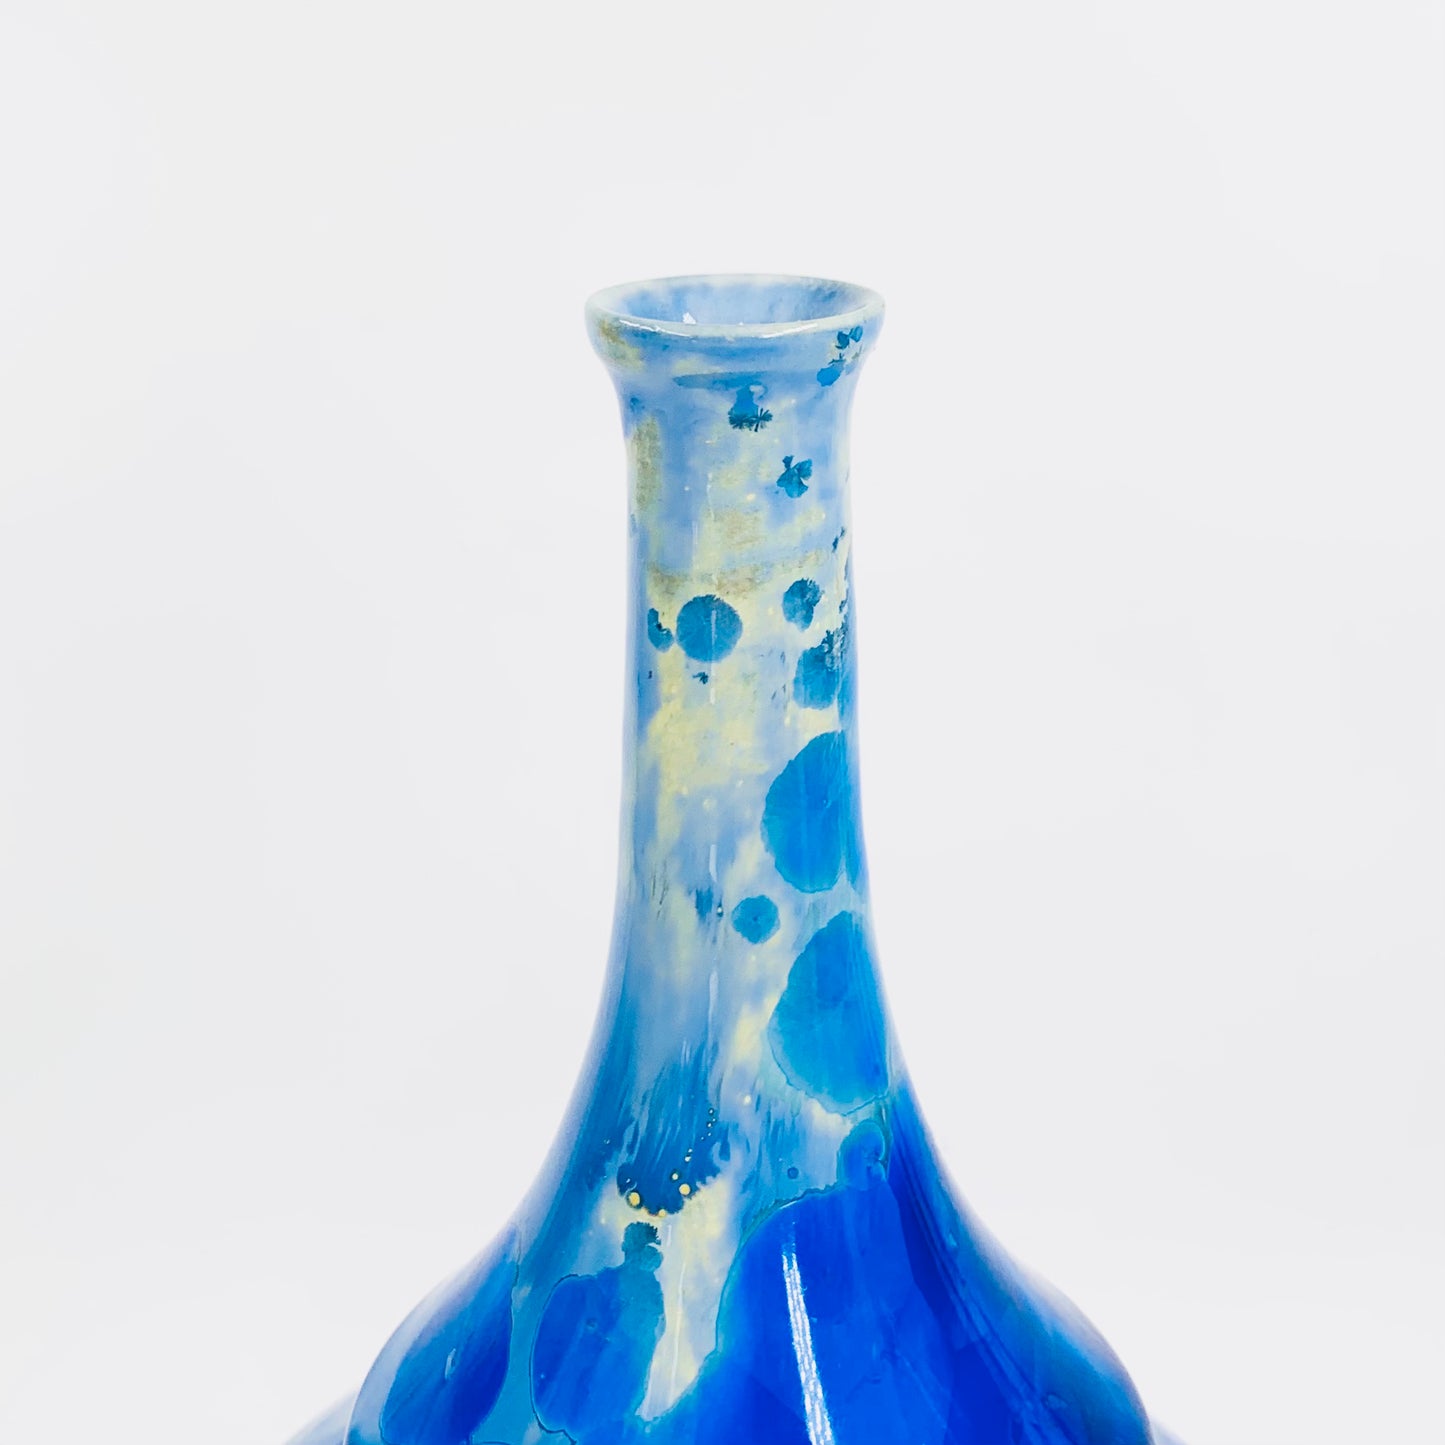 Retro hand made Australian cobalt blue gradient crystalline pottery bottle vase